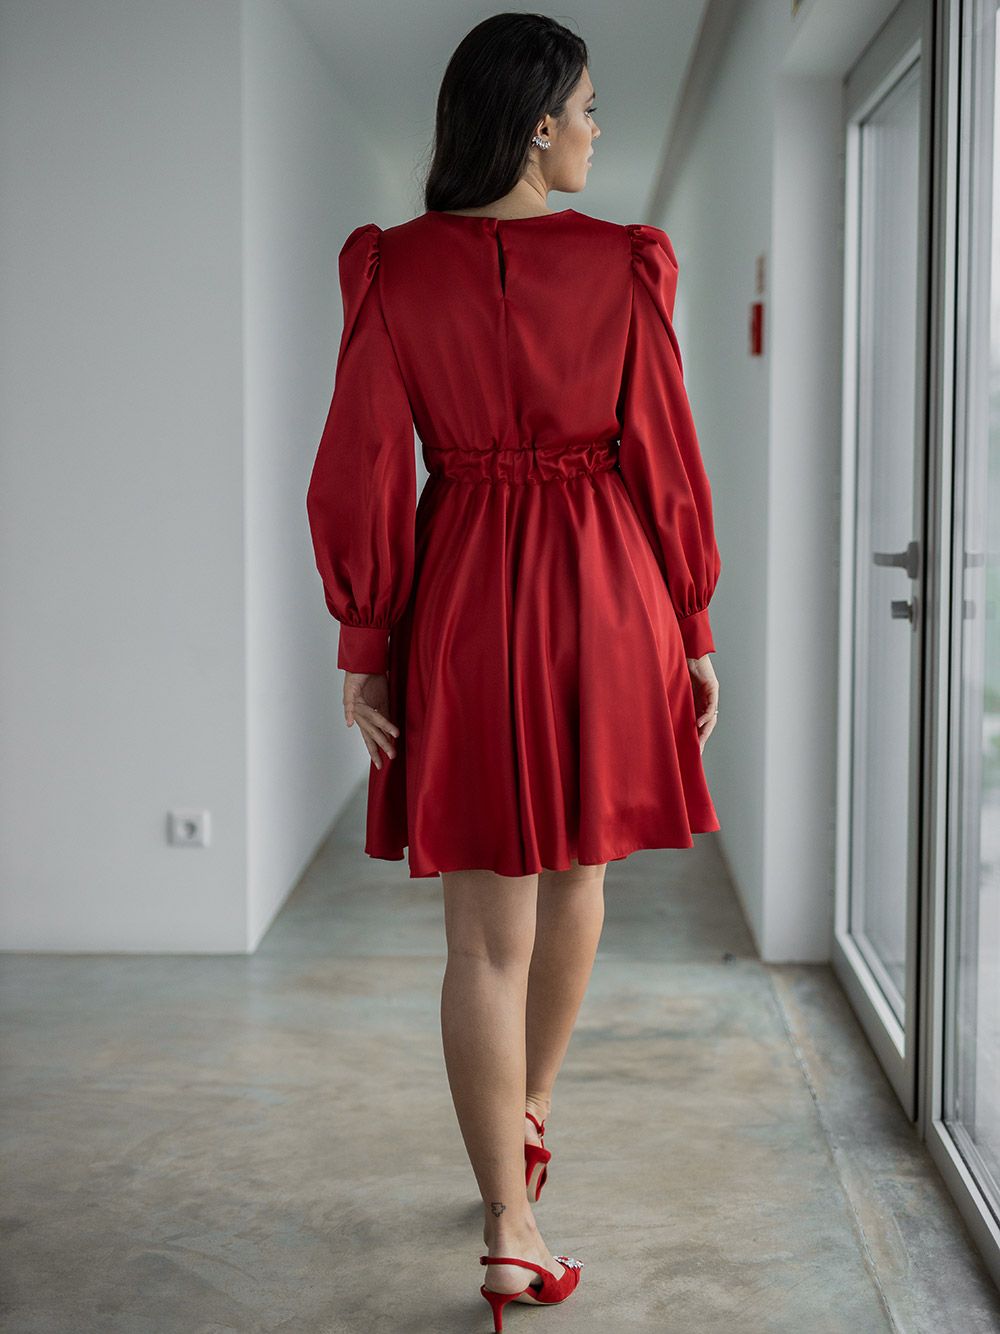 o vestido vermelho